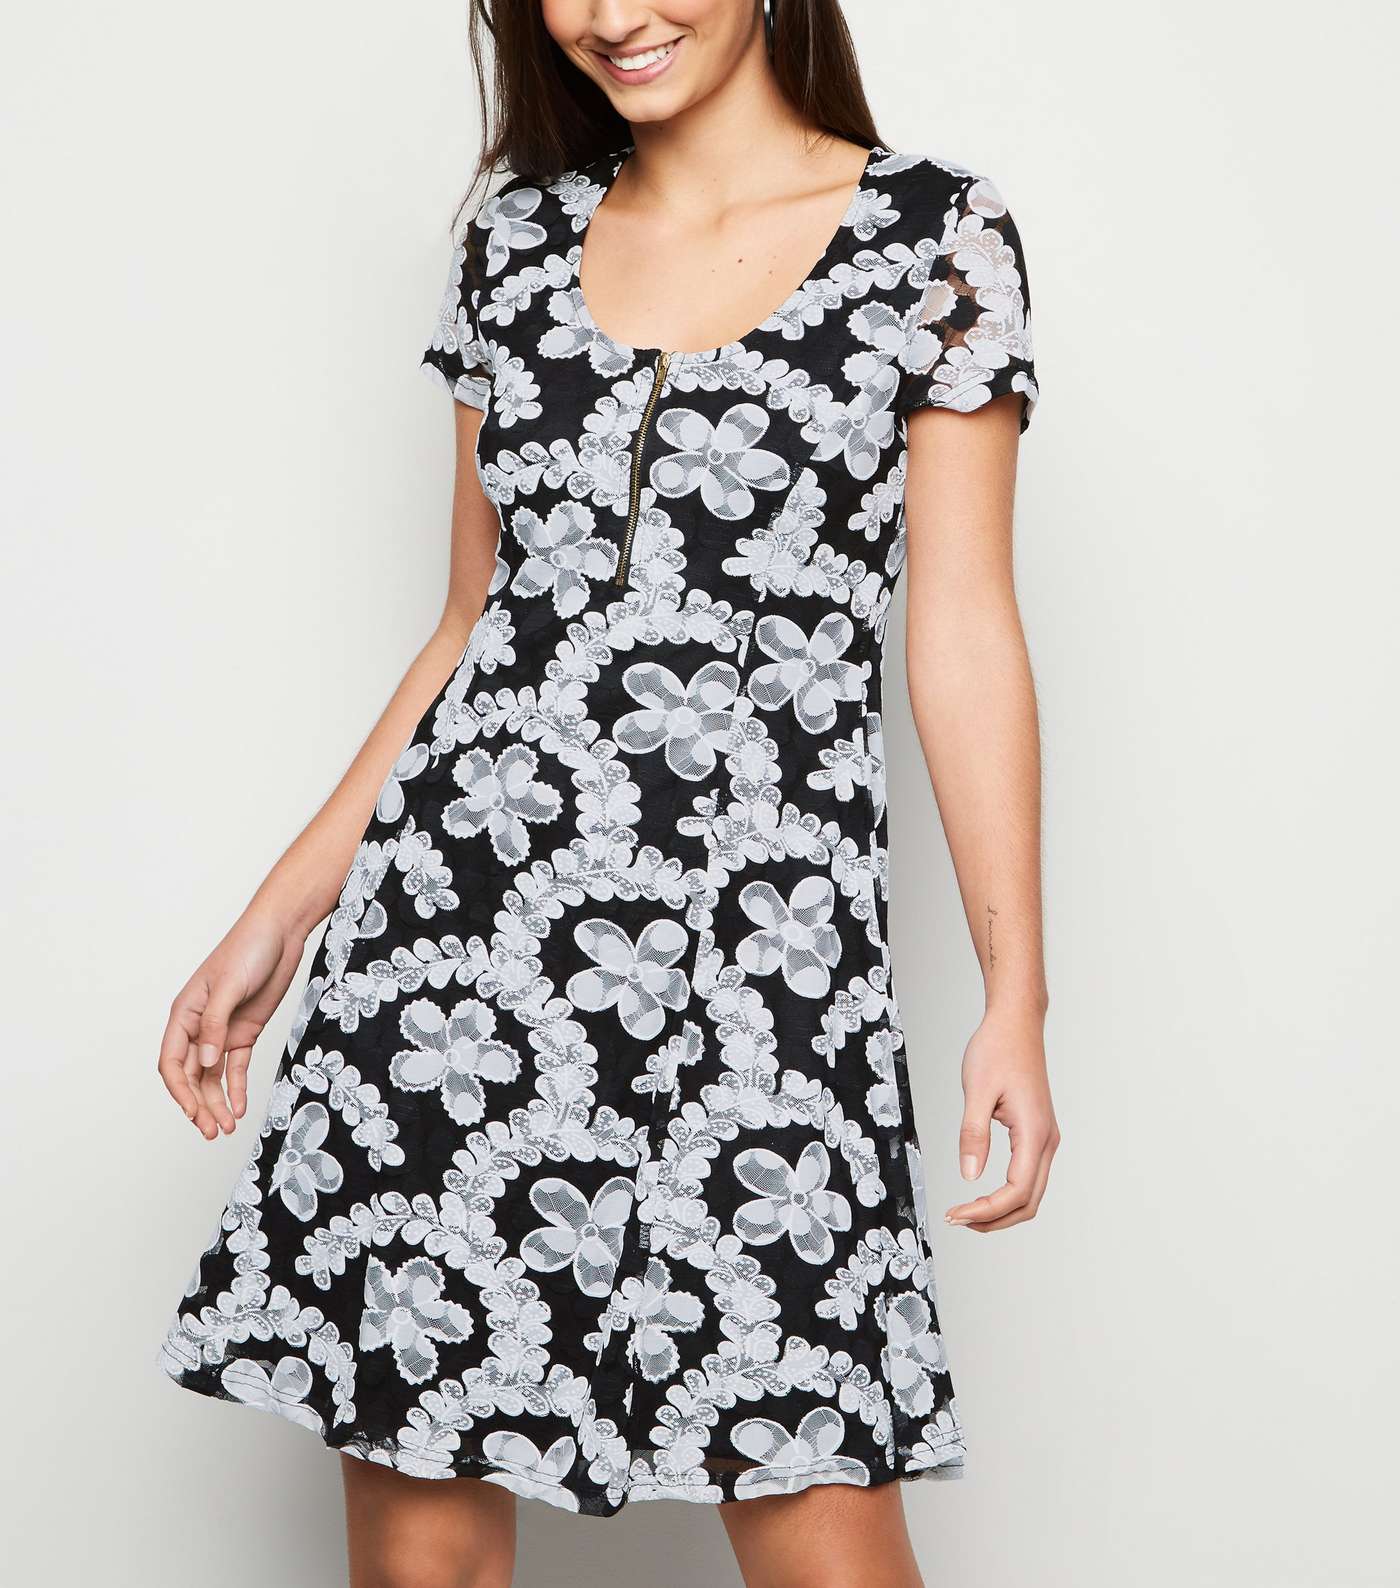 Apricot Black Lace Zip Front Dress Image 2